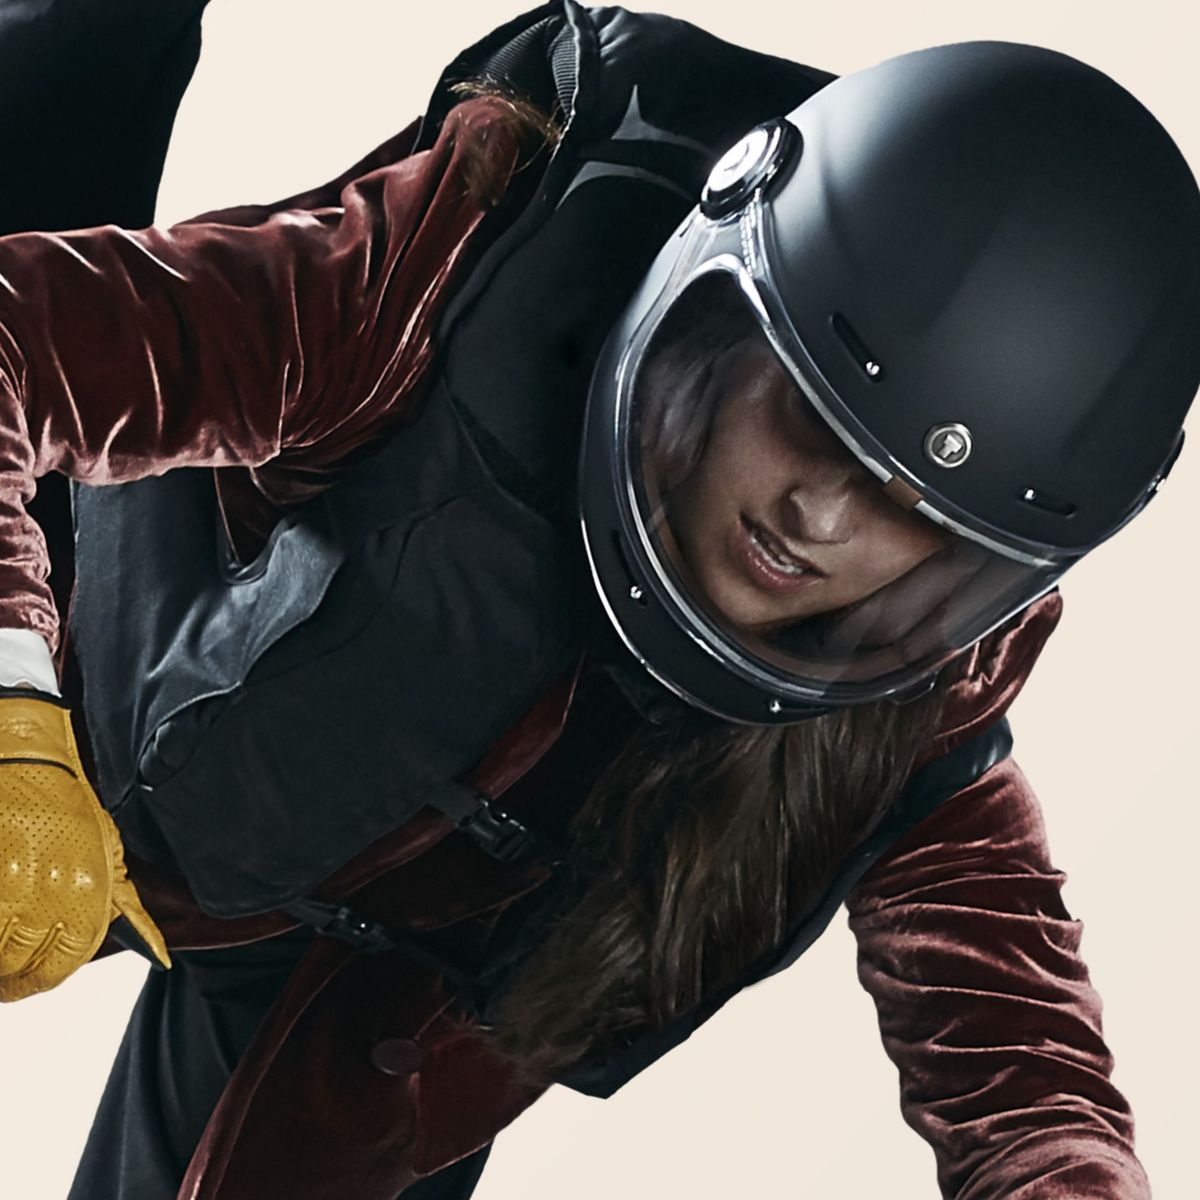 Este chaleco airbag para moto te puede salvar la vida y su precio